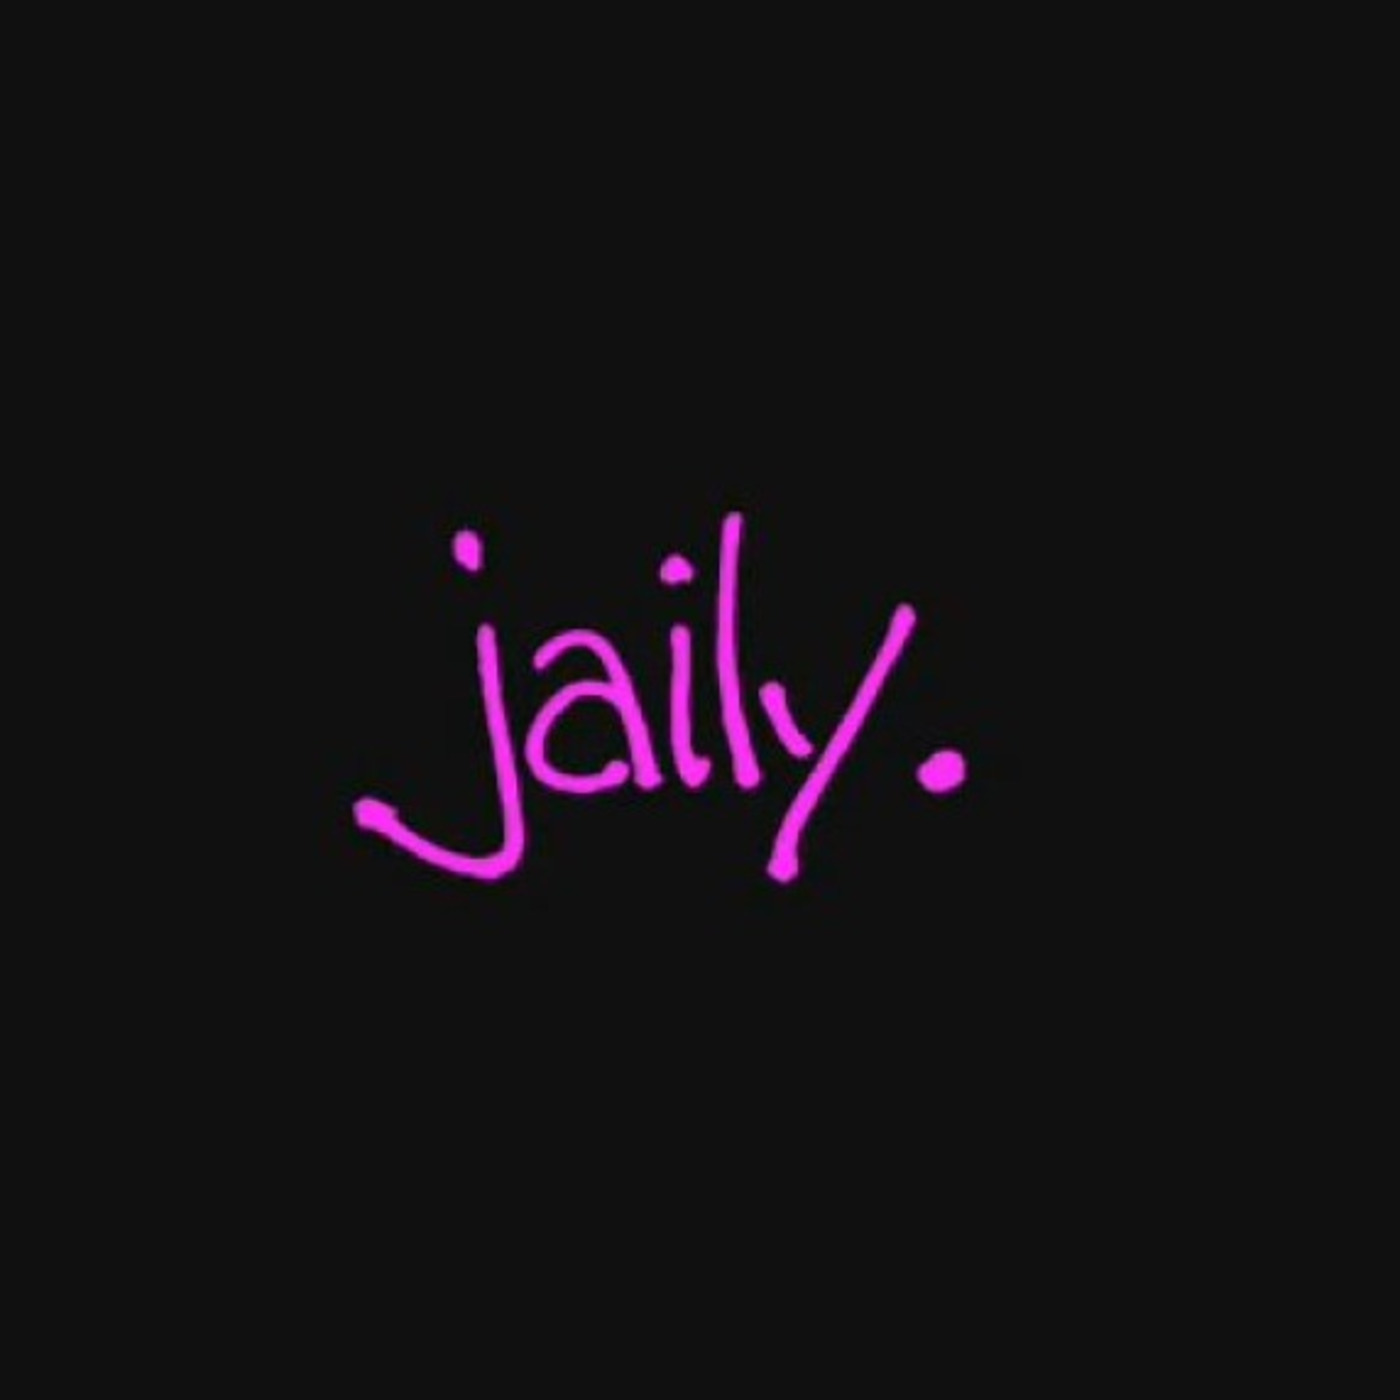 jaily